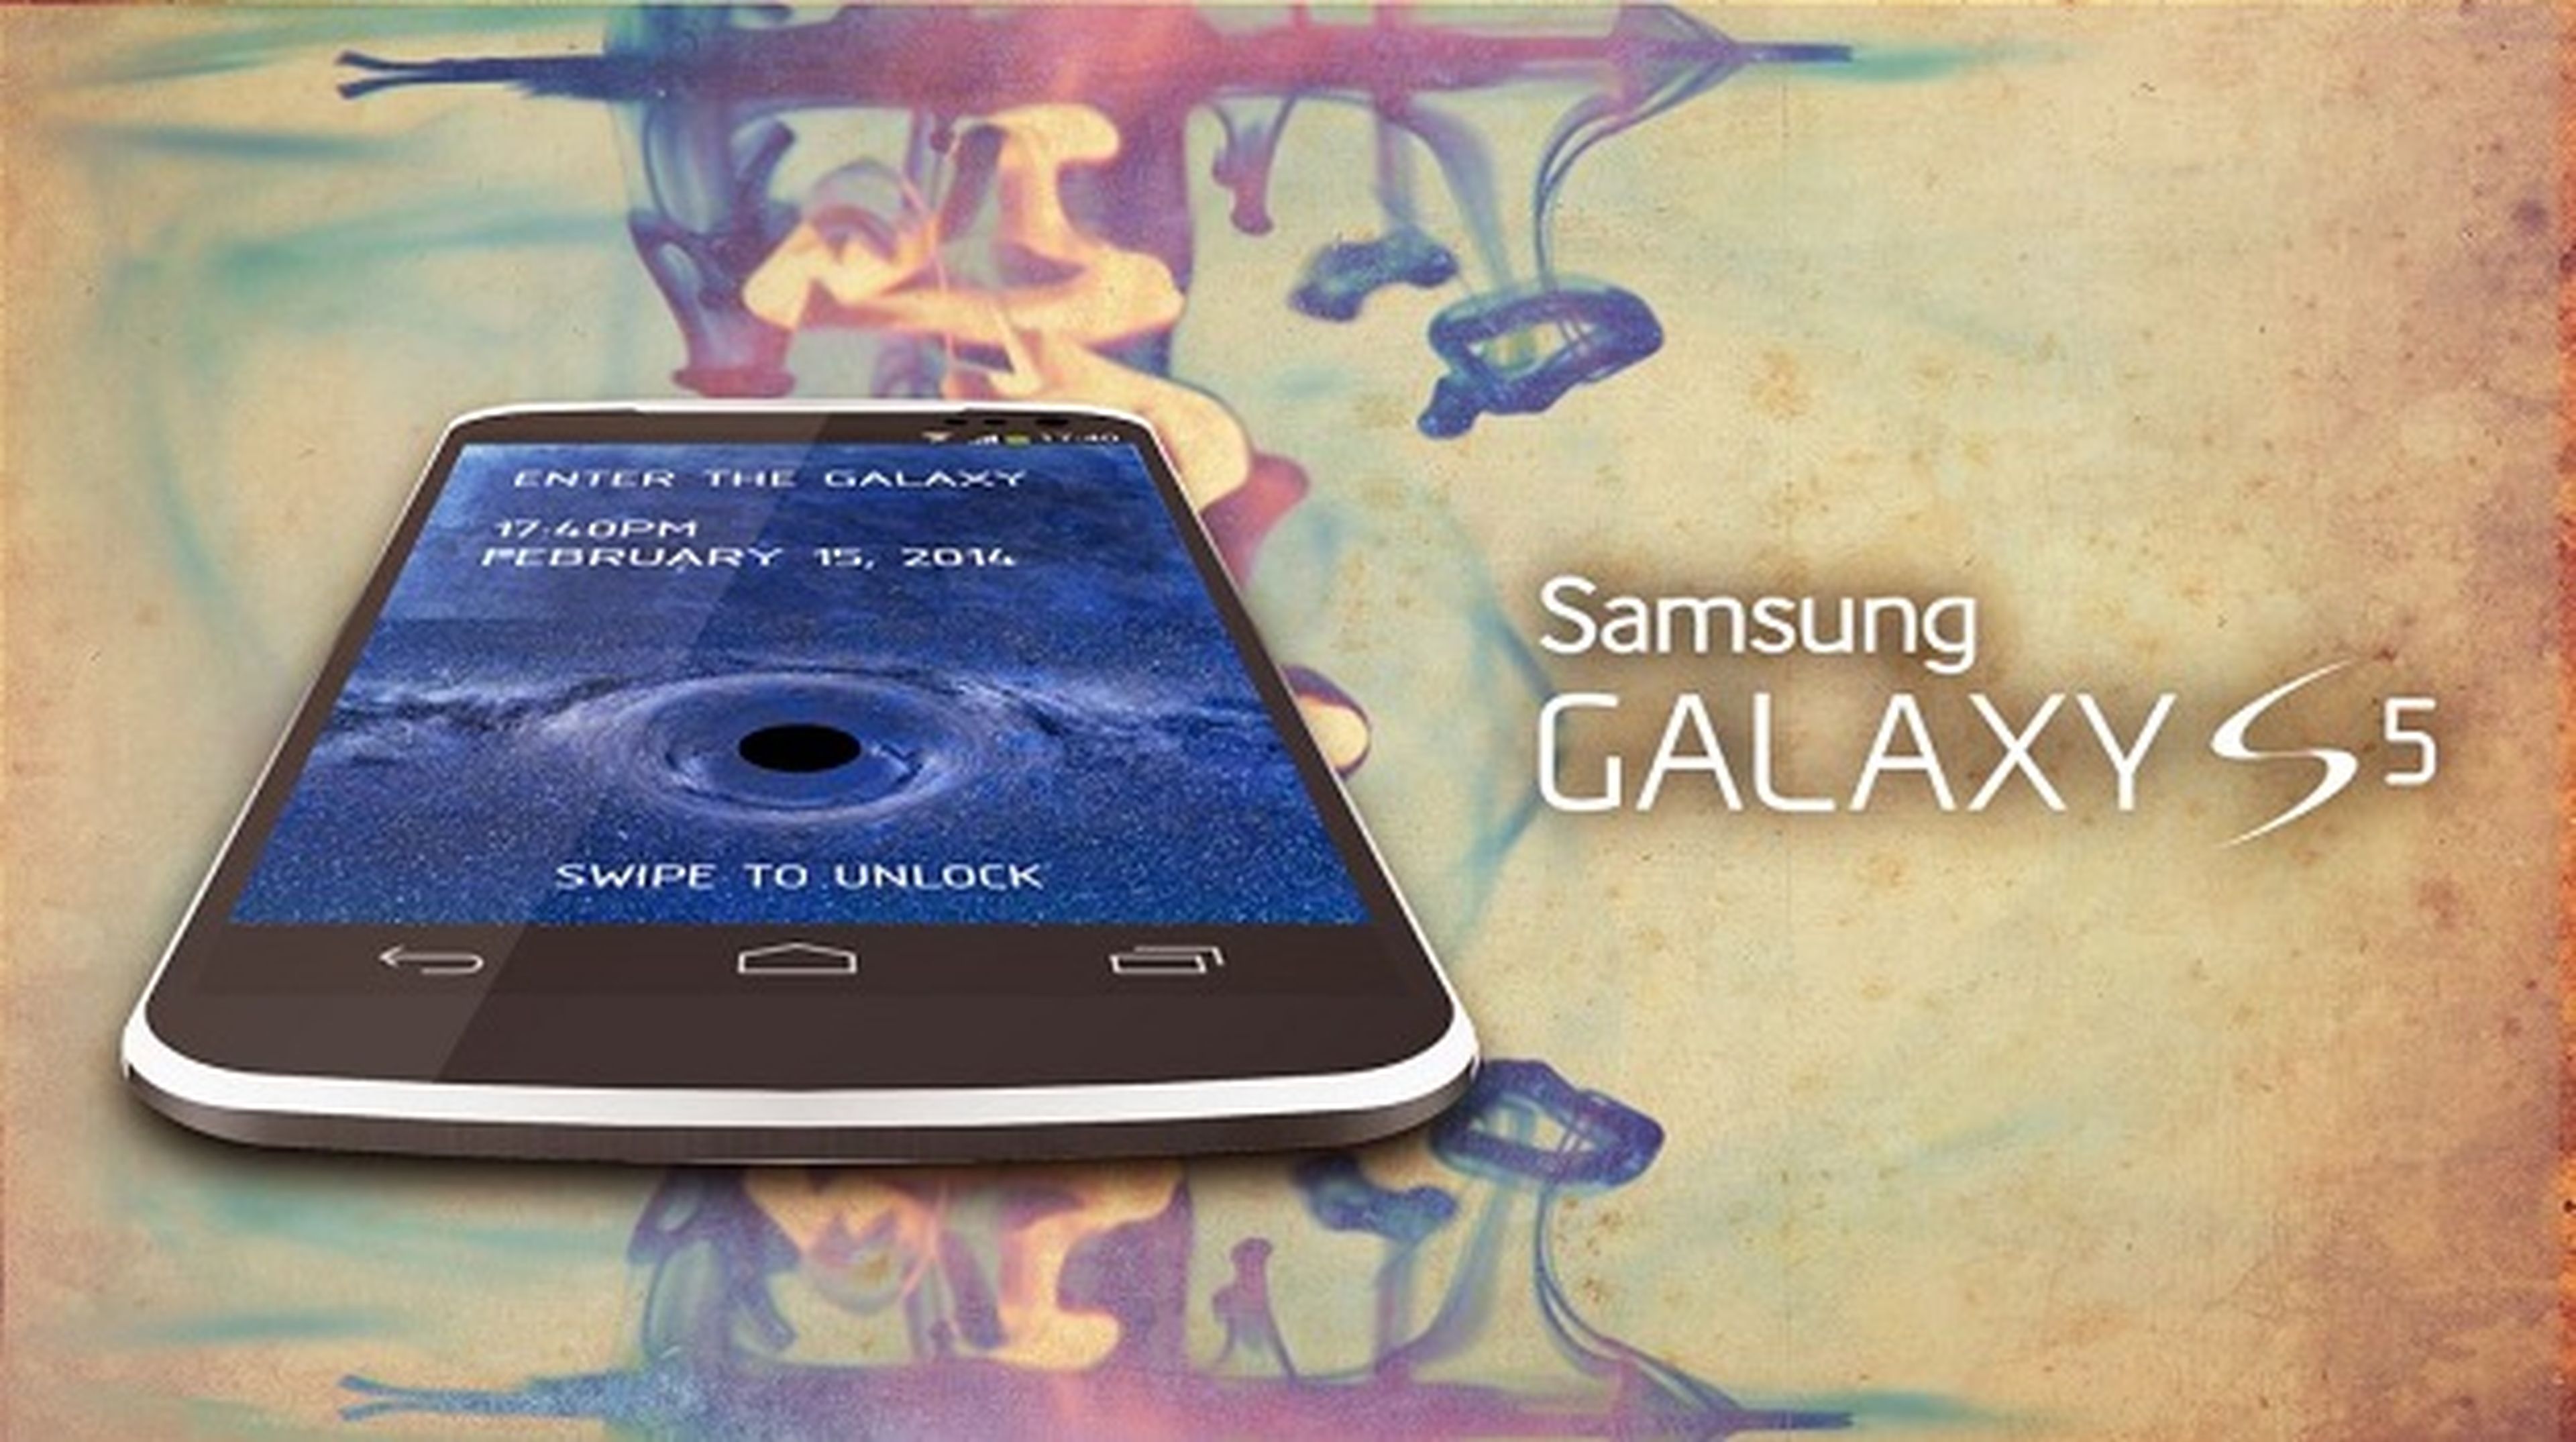 Samsung Galaxy S5 equiparía 4 GB de memoria RAM